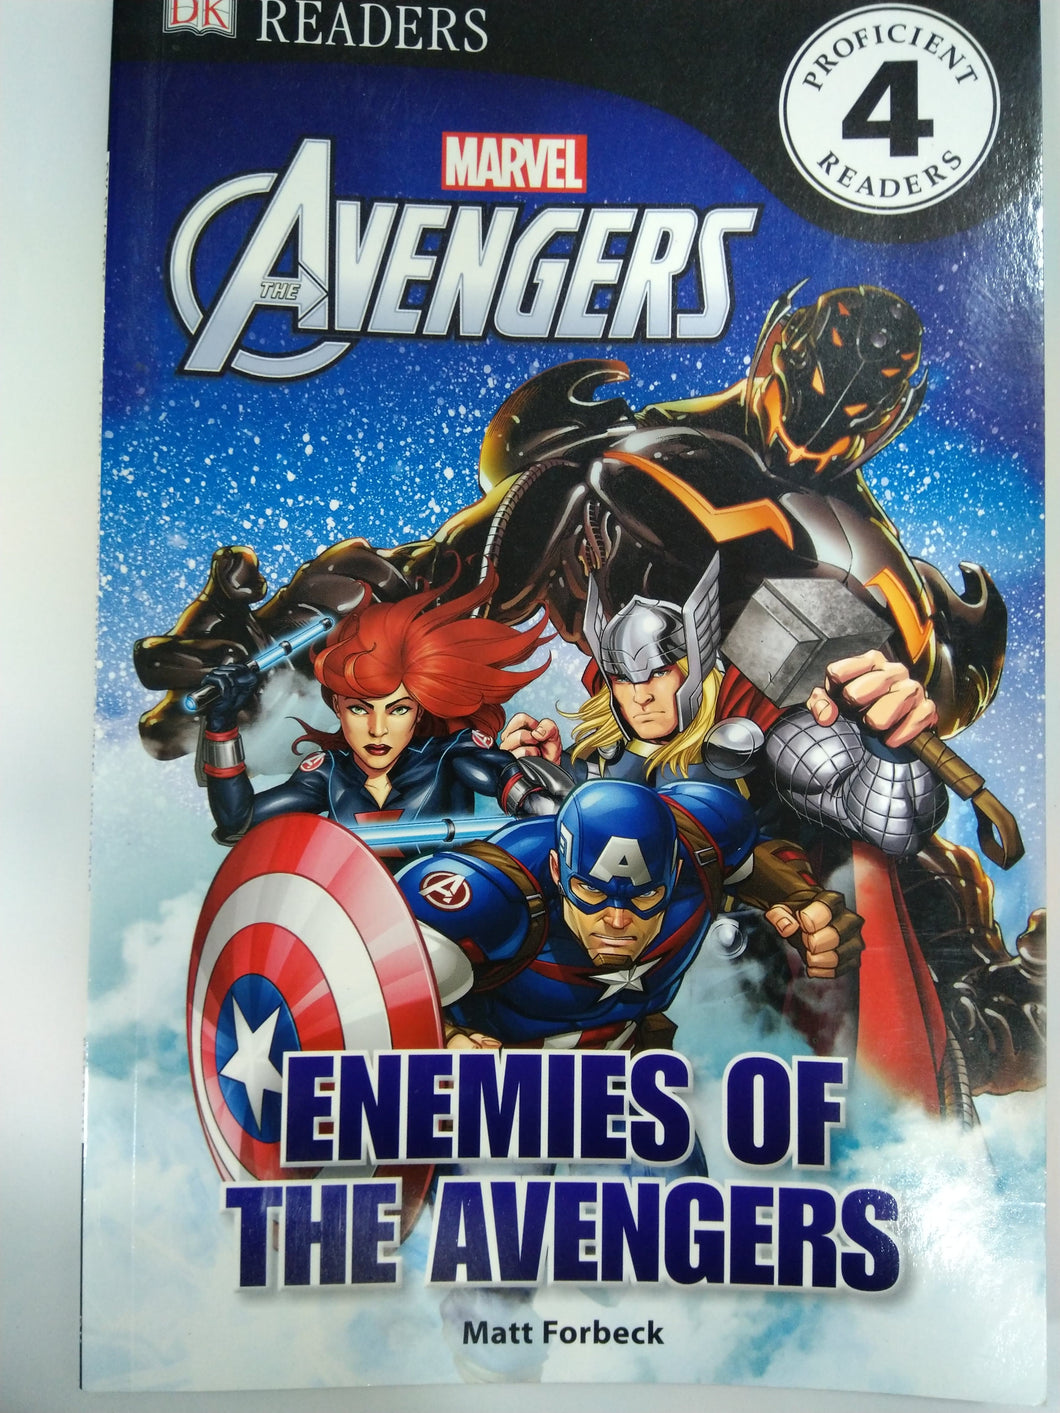 Marvel The Avengers - Enemies of the Avengers (DK Readers Level 4)